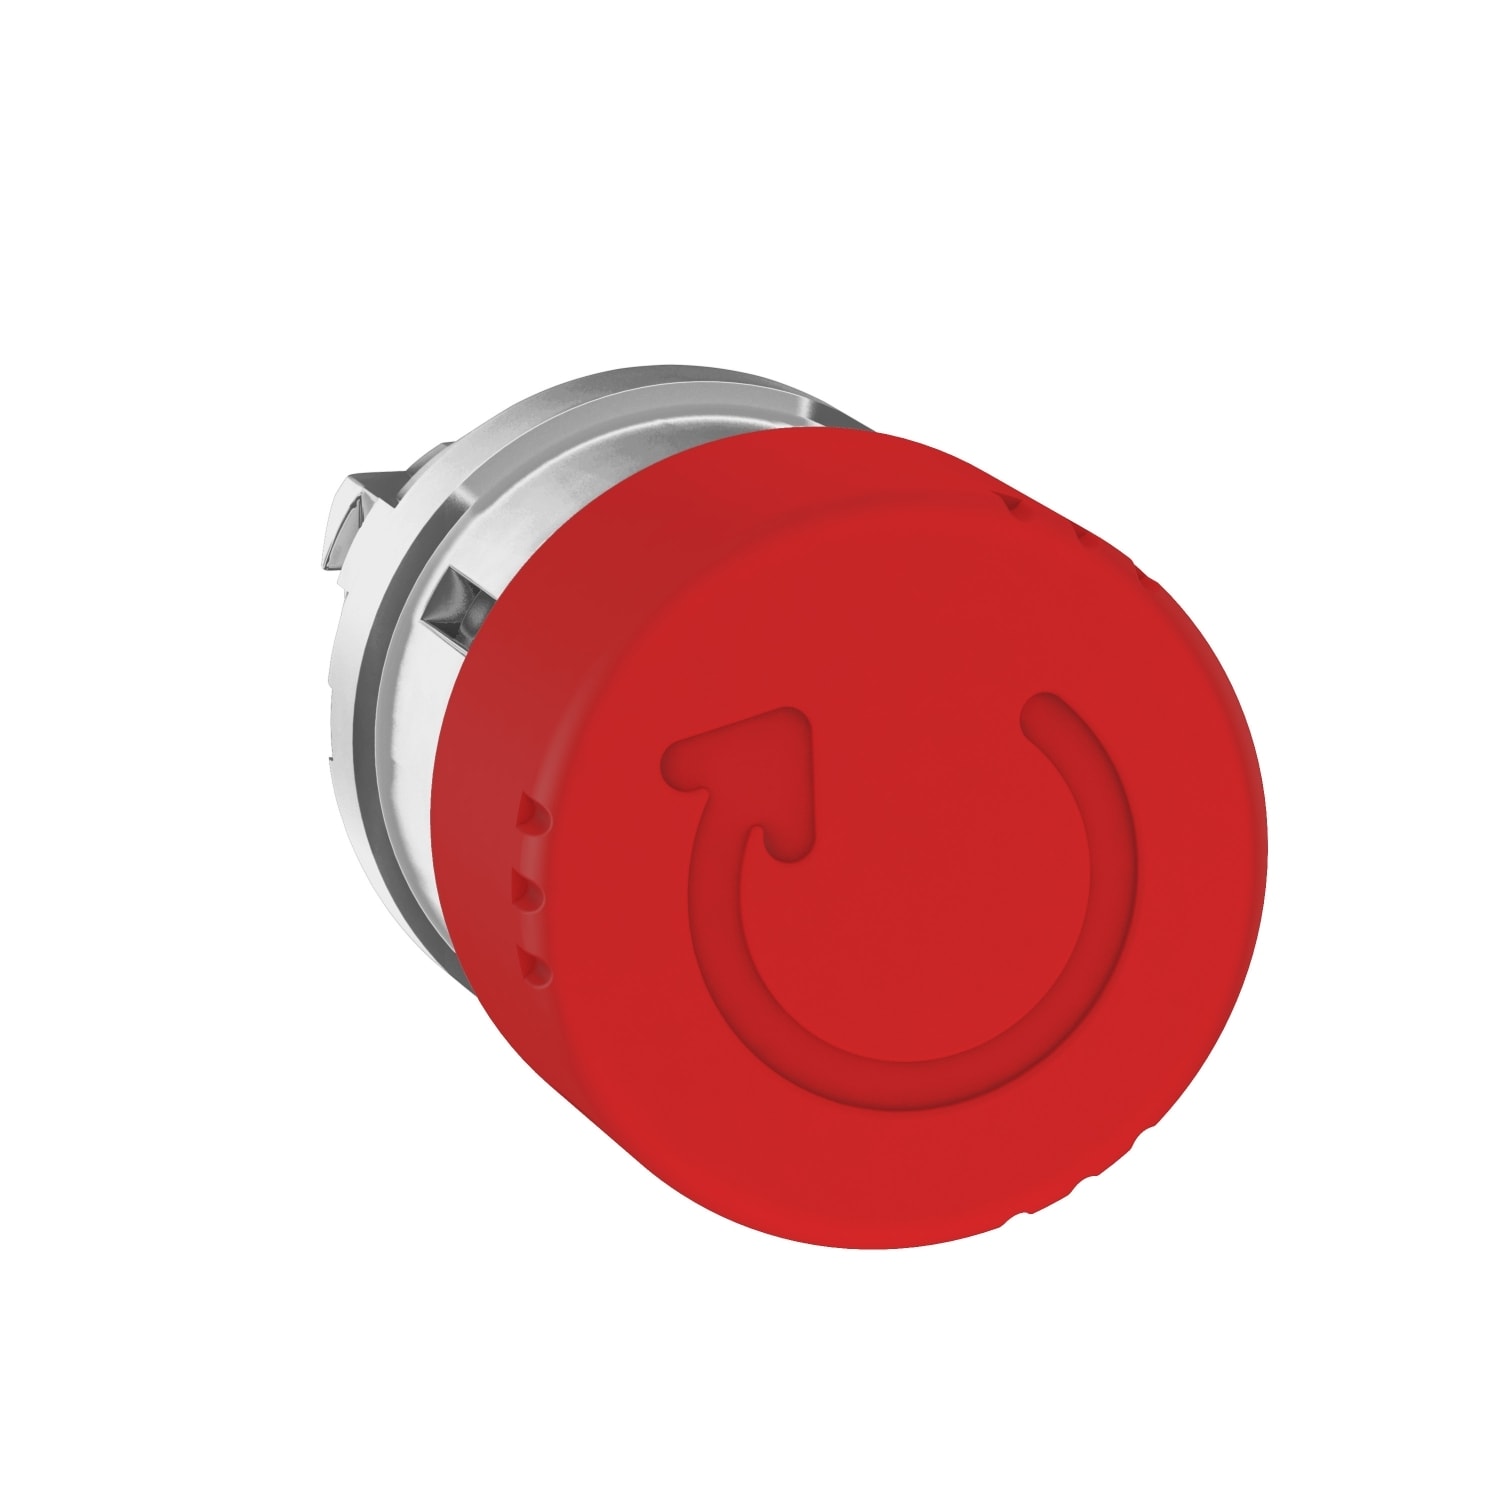 Schneider Electric - Harmony XB4 - tete bouton arret urgence - D30 - pousser tourner - rouge